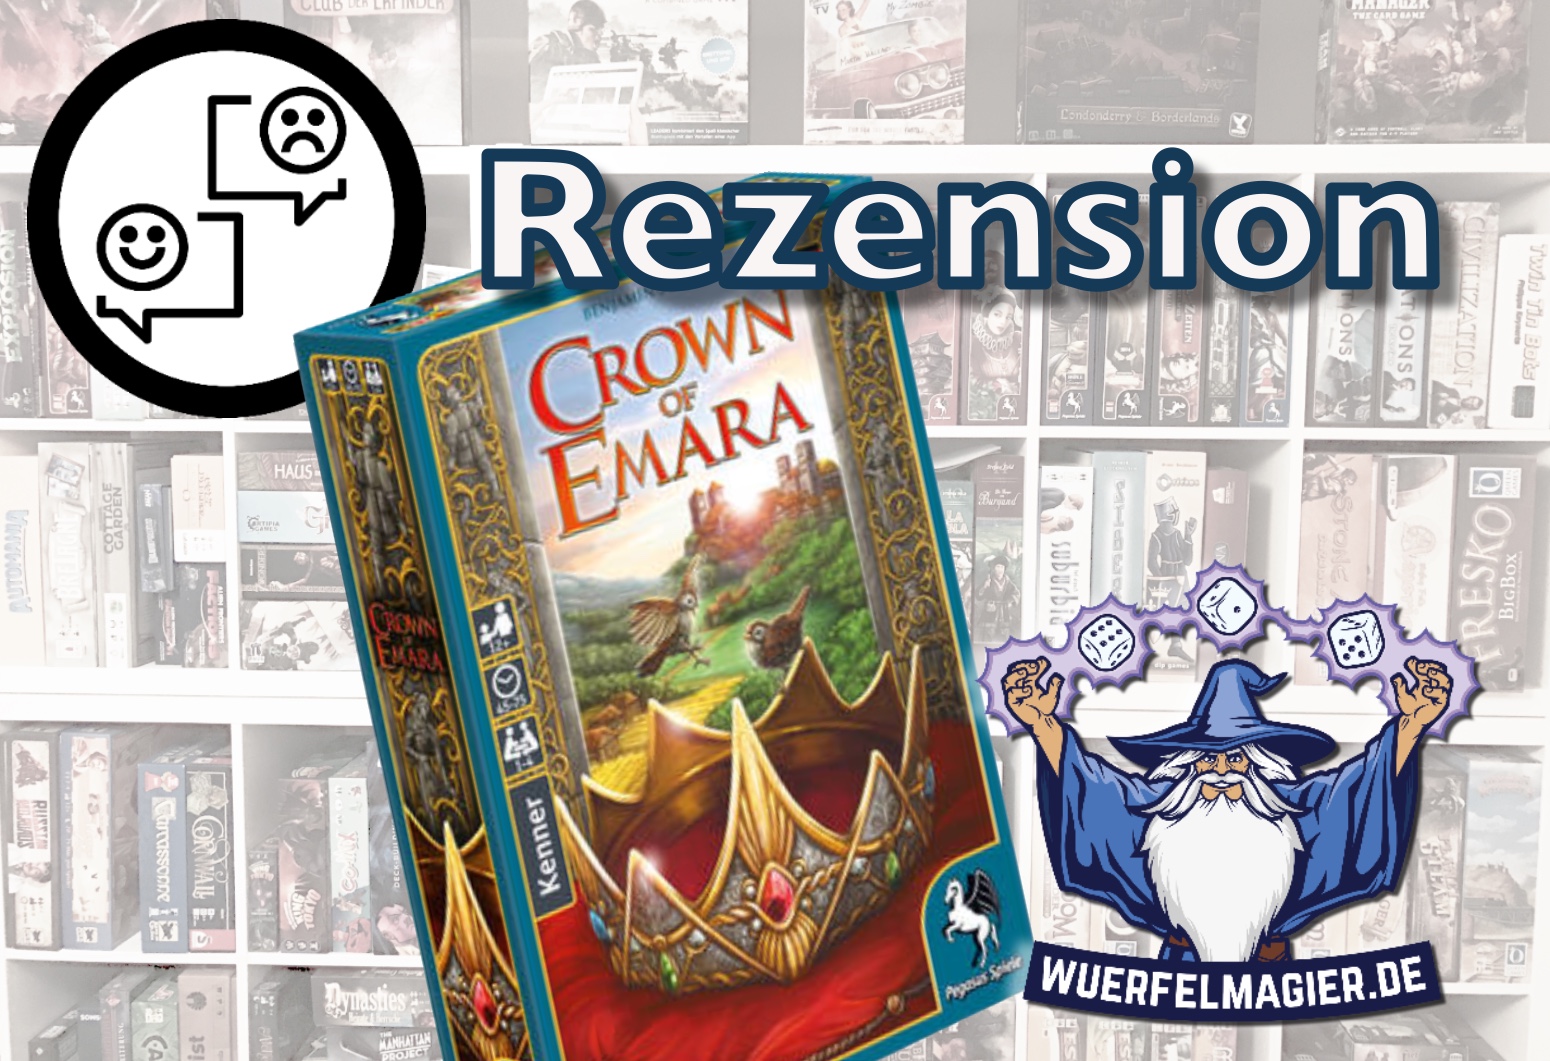 Rezension Crown of Emara Pegasus Spiele Rezension Review Wuerfelmagier Würfelmagier